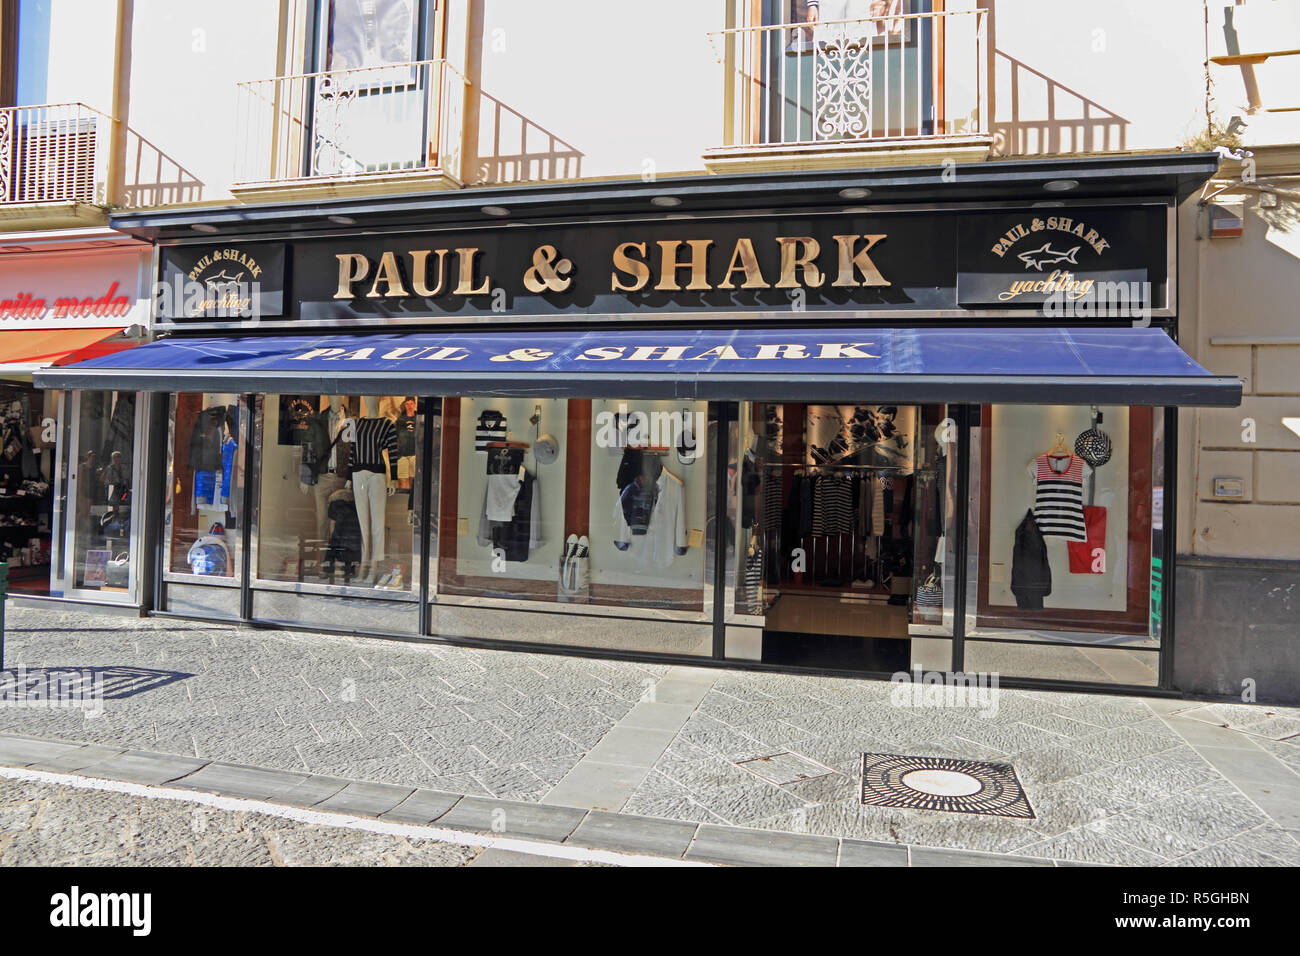 Pauk & Shark negozio di abbigliamento, Sorrento, Italia Foto Stock